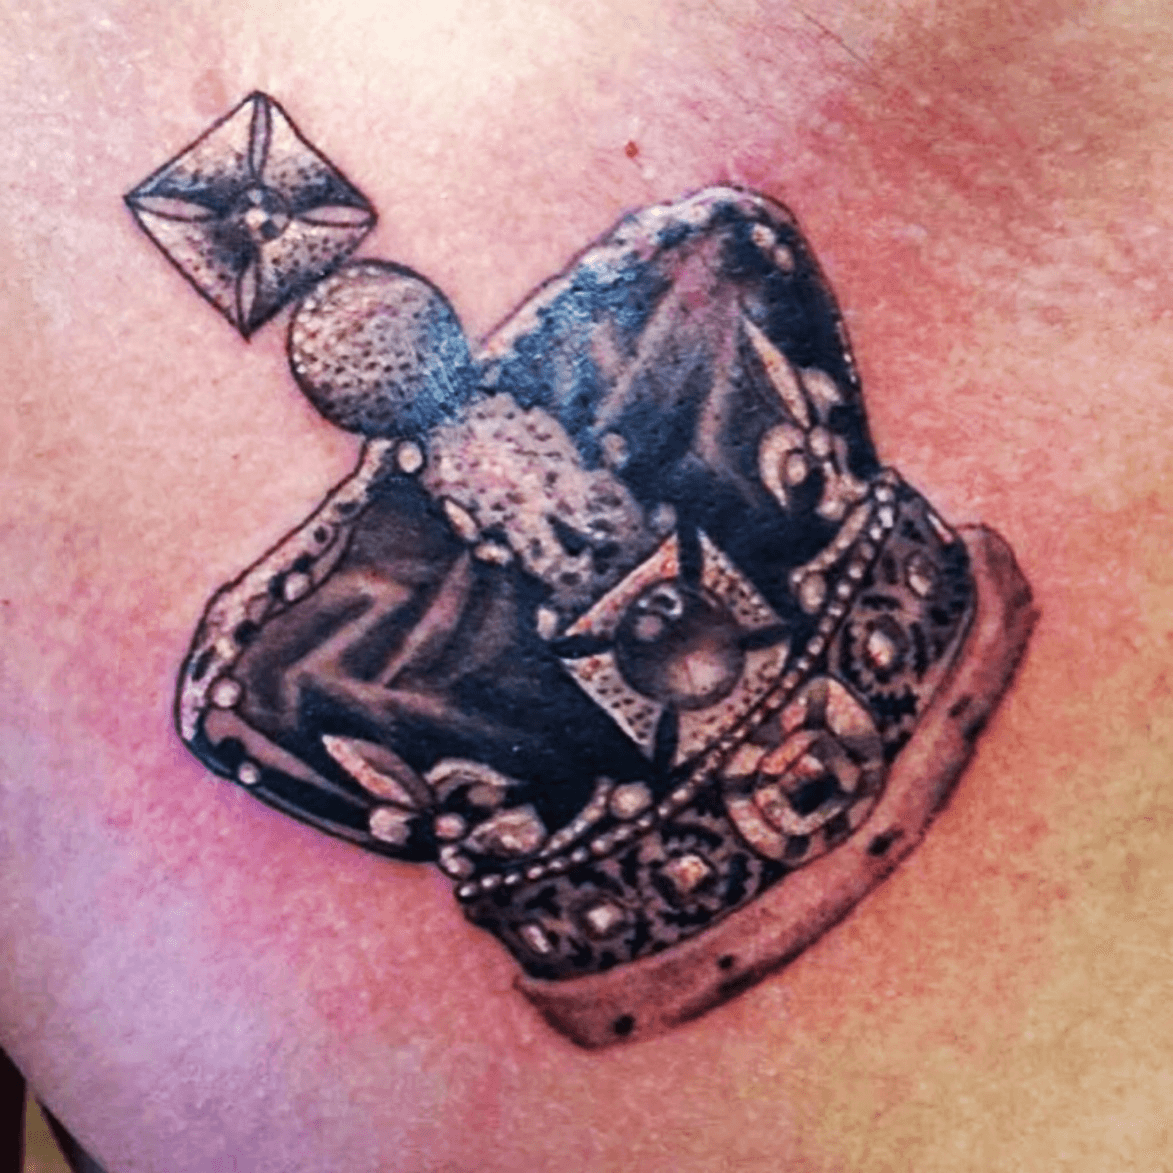 Tattoo uploaded by Tye Tremblay • Skull King #skullking #torontotattoo  #torontotattoos #skull • Tattoodo